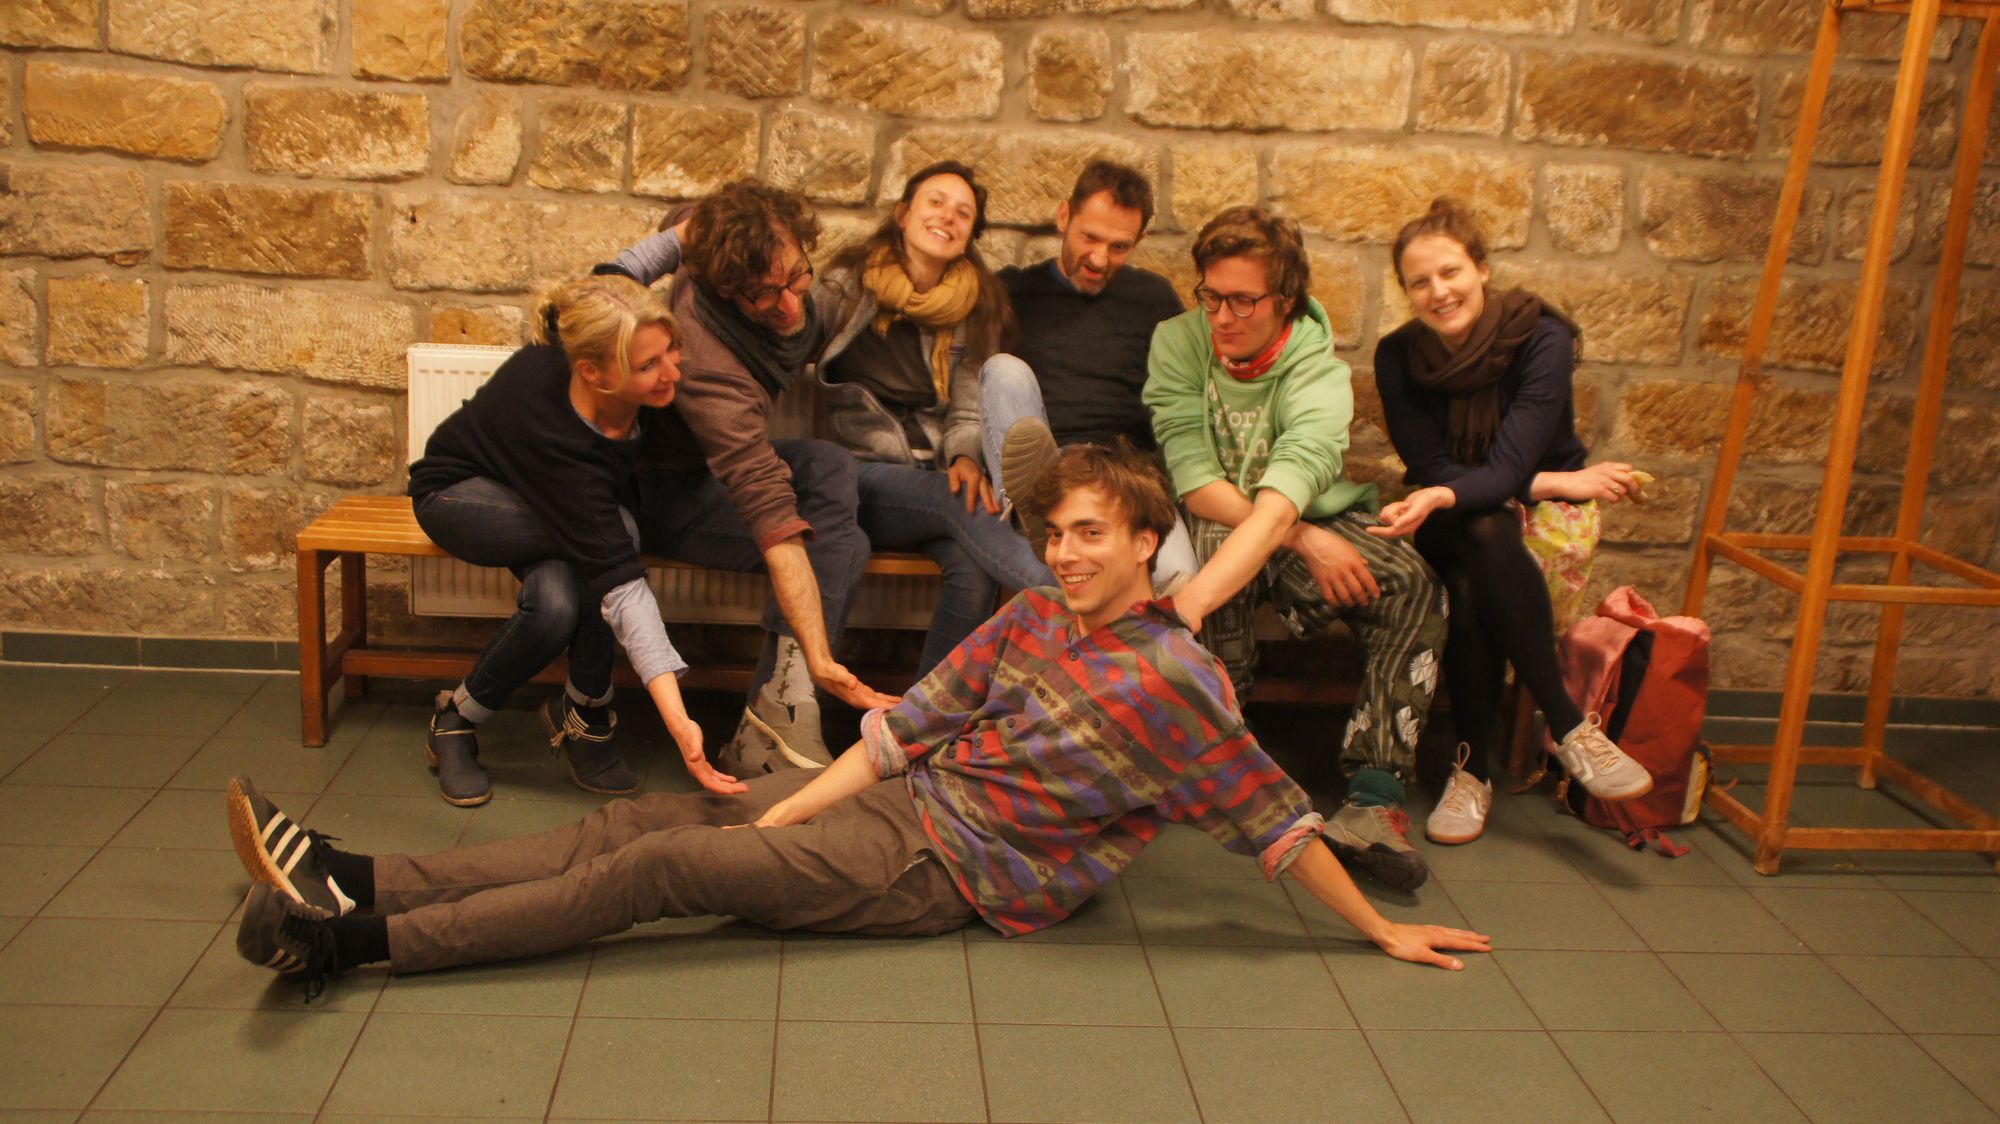 Die Impro-Theatergruppe "Elchtest": Kerstin, Nils, Melanie, Hendrik, Bene, Leila und vorn Clemens